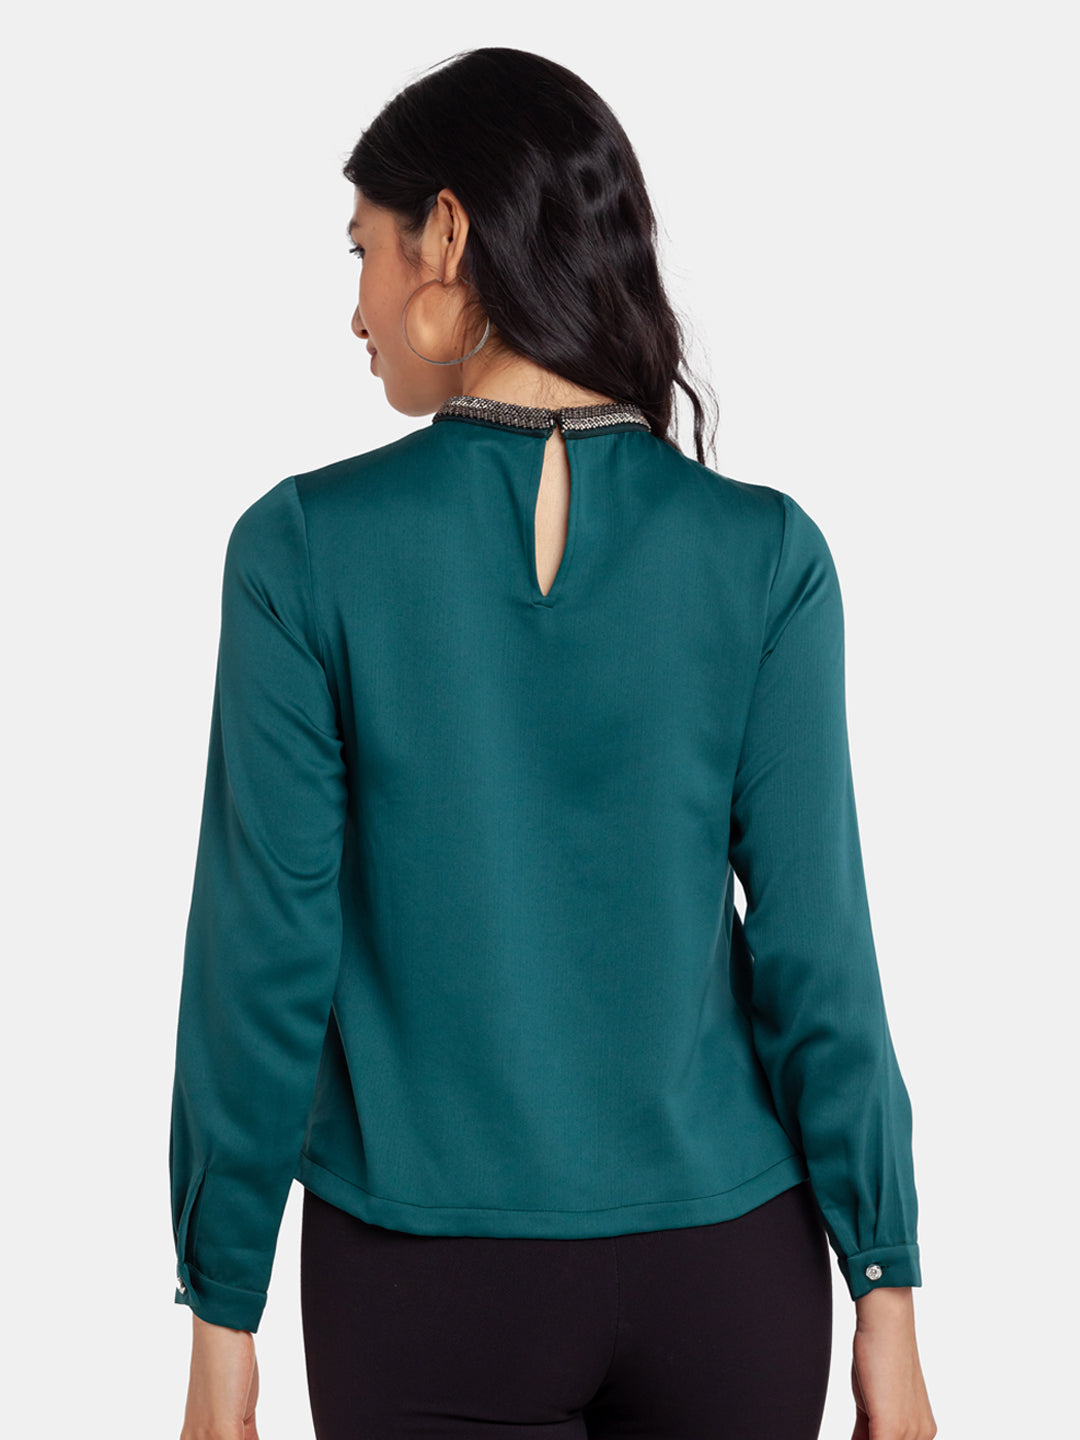 Green Embellished Regular Top For Women